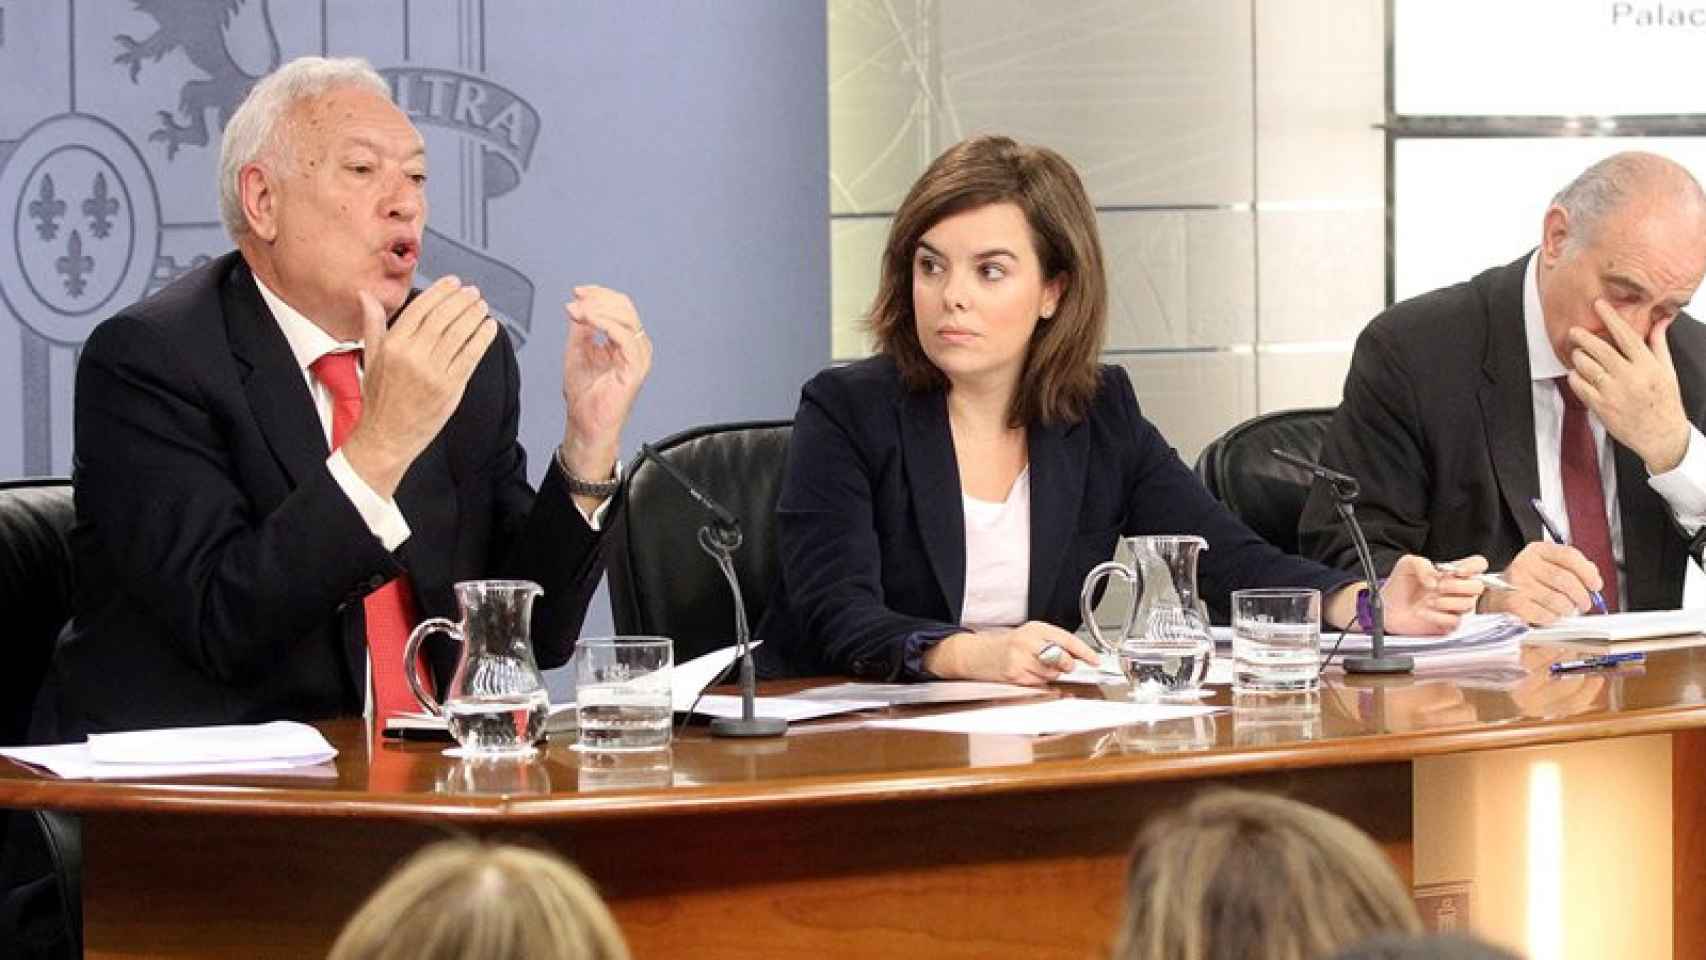 El ministro de Exteriores, Jose Manuel García Margallo; la vicepresidenta del Gobierno, Soraya Sáenz de Santamaría, y el ministro del Interior, Jorge Fernández Díaz, en una imagen de archivo.